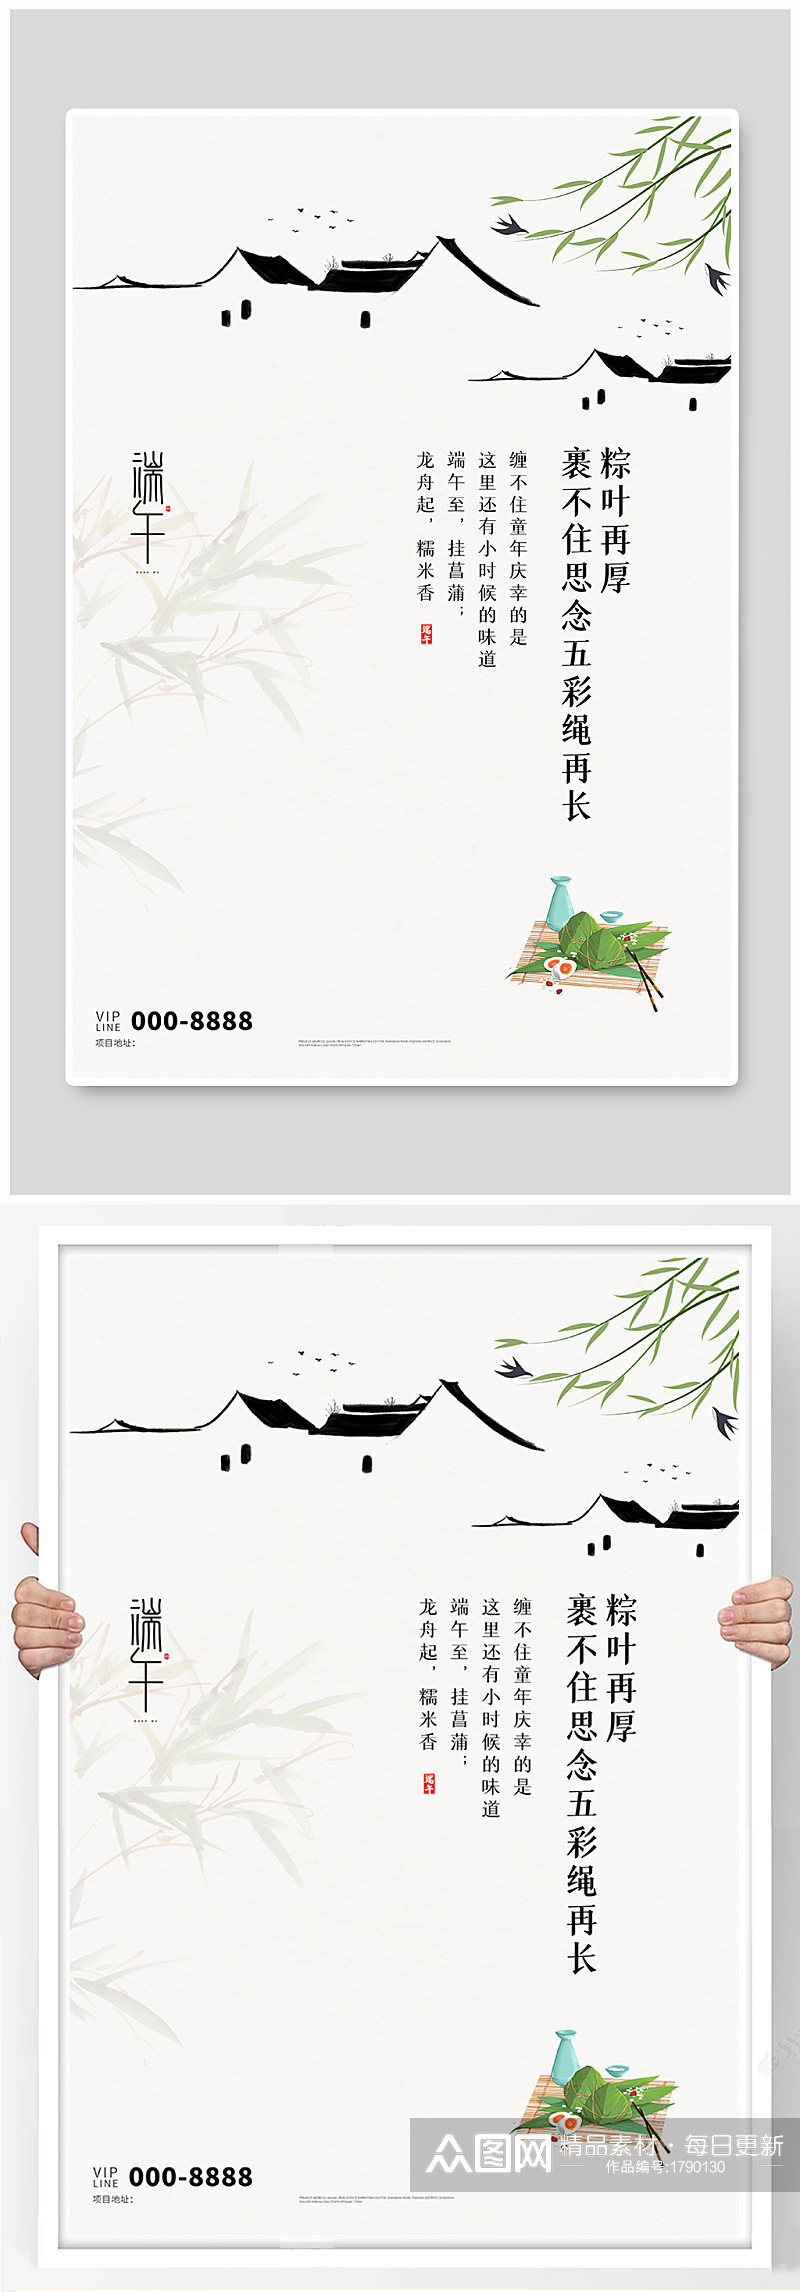 端午传统节日白色中国风海报素材